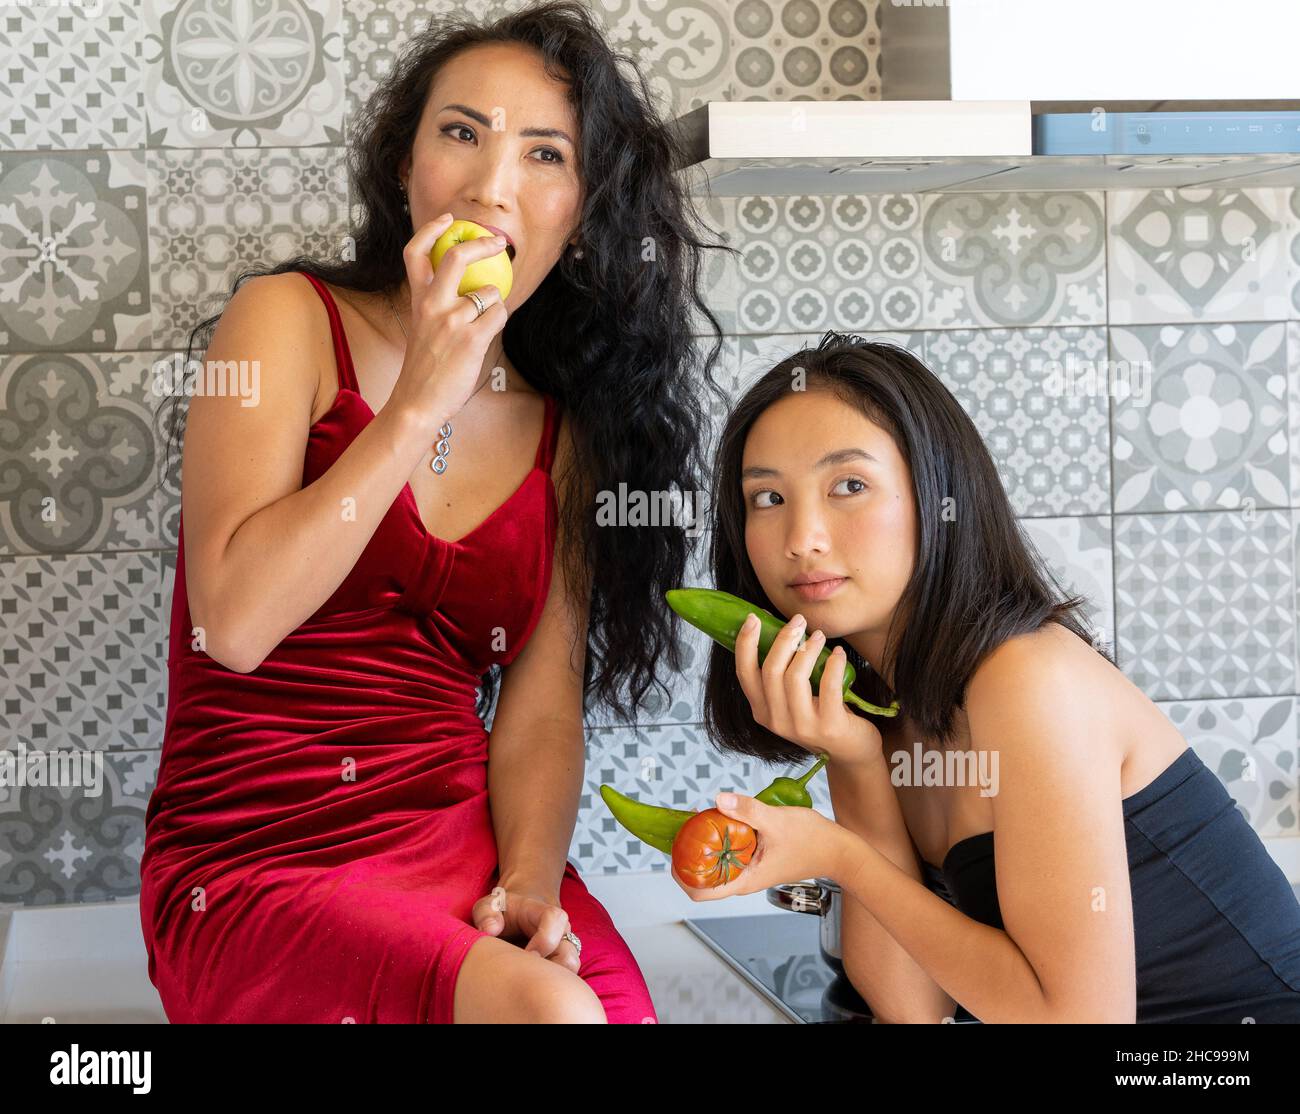 Deux filles asiatiques bien vêtues posant dans la cuisine avec des légumes dans leurs mains, fond carrelé Banque D'Images